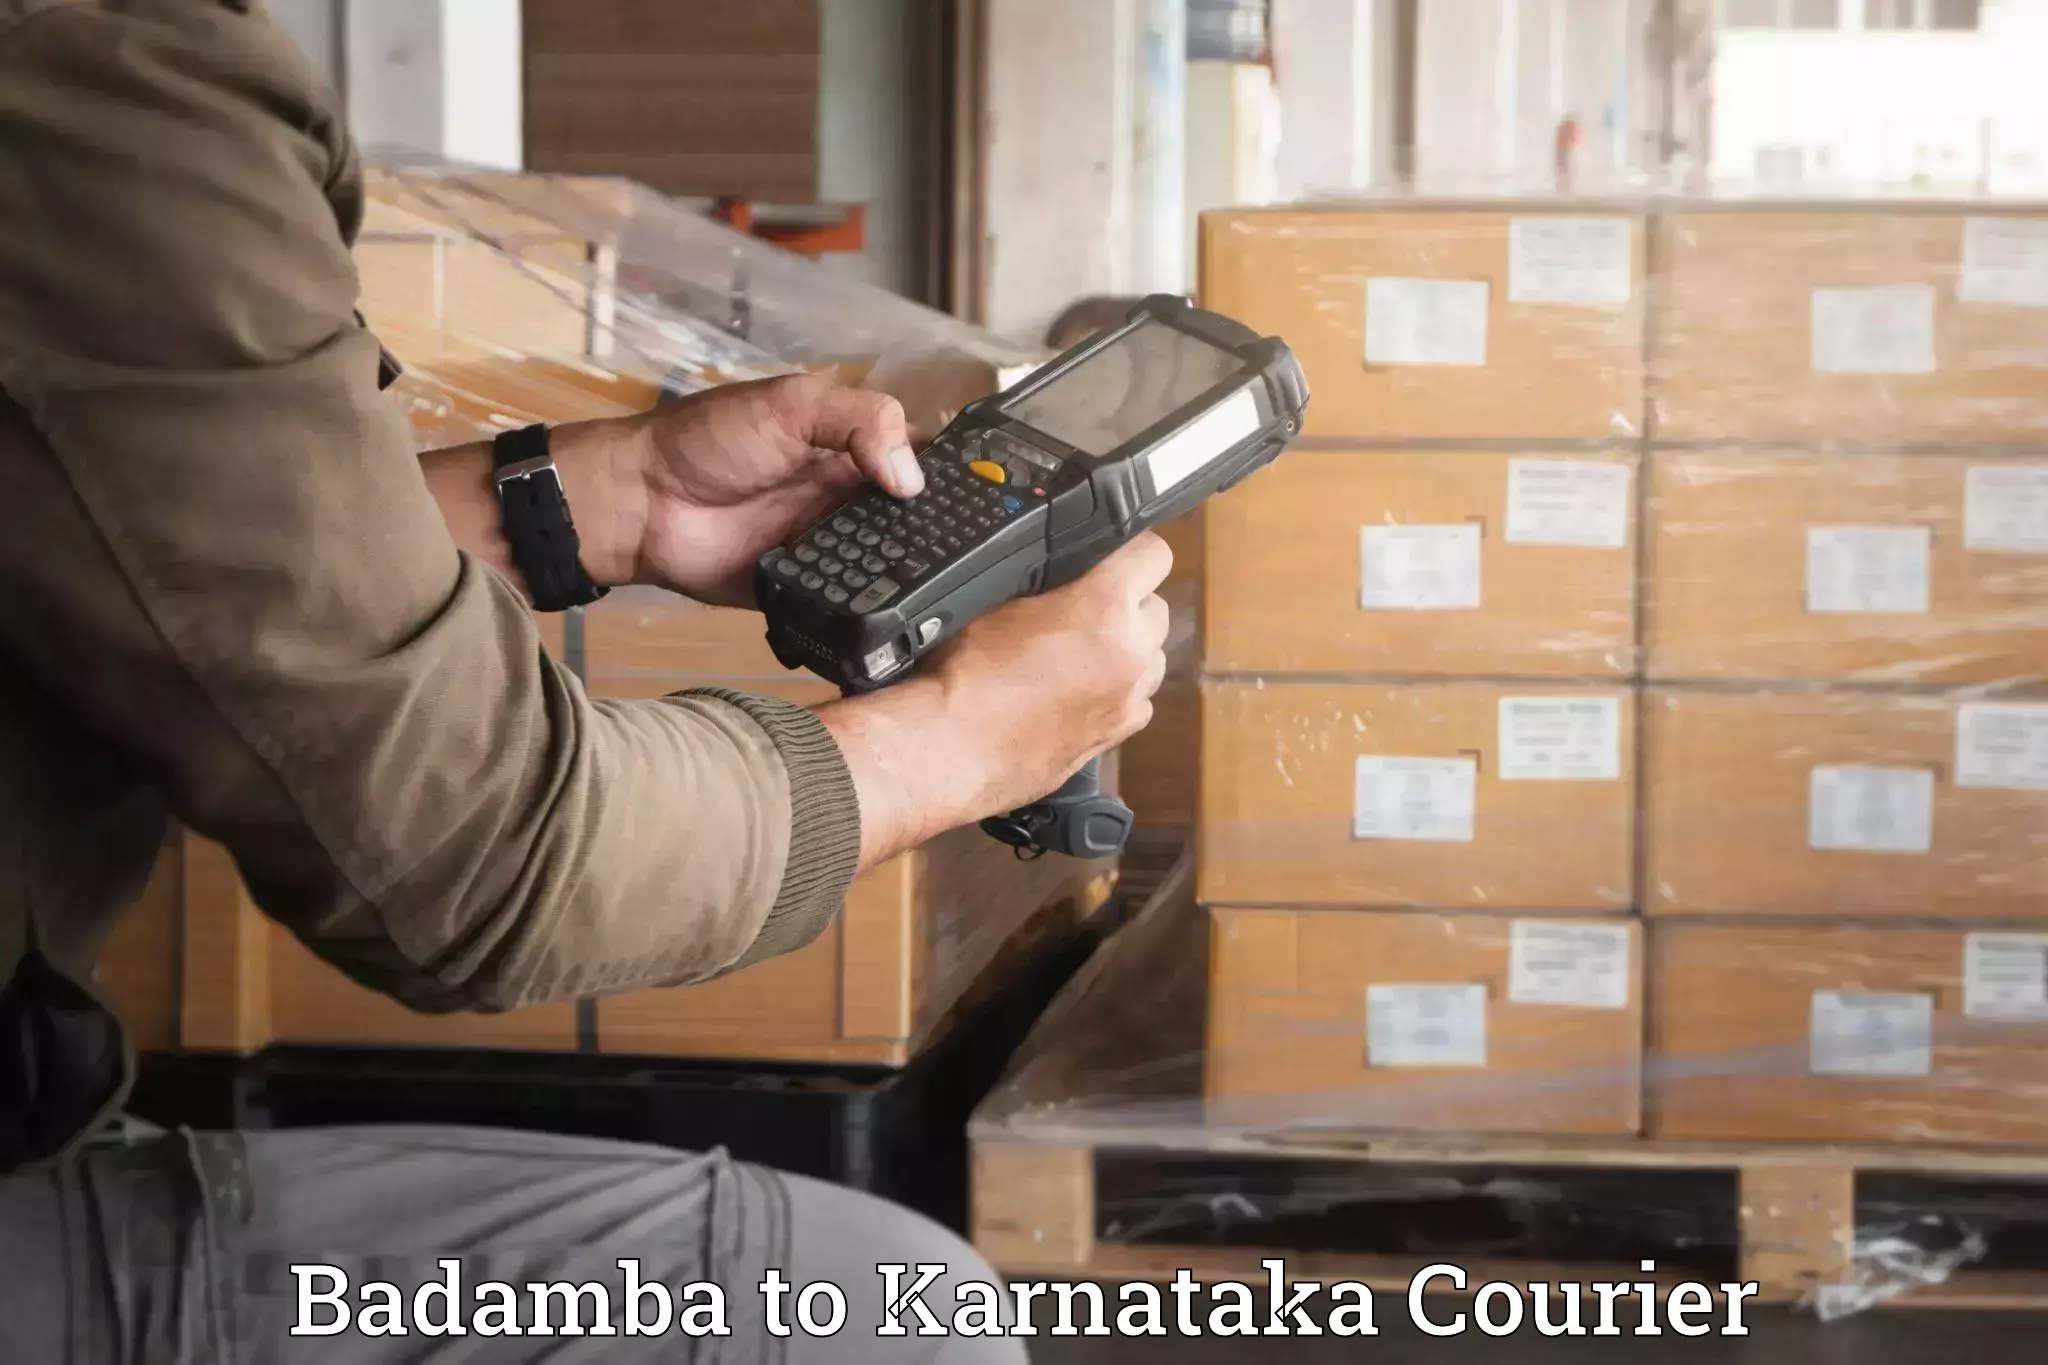 Efficient household movers Badamba to Karnataka